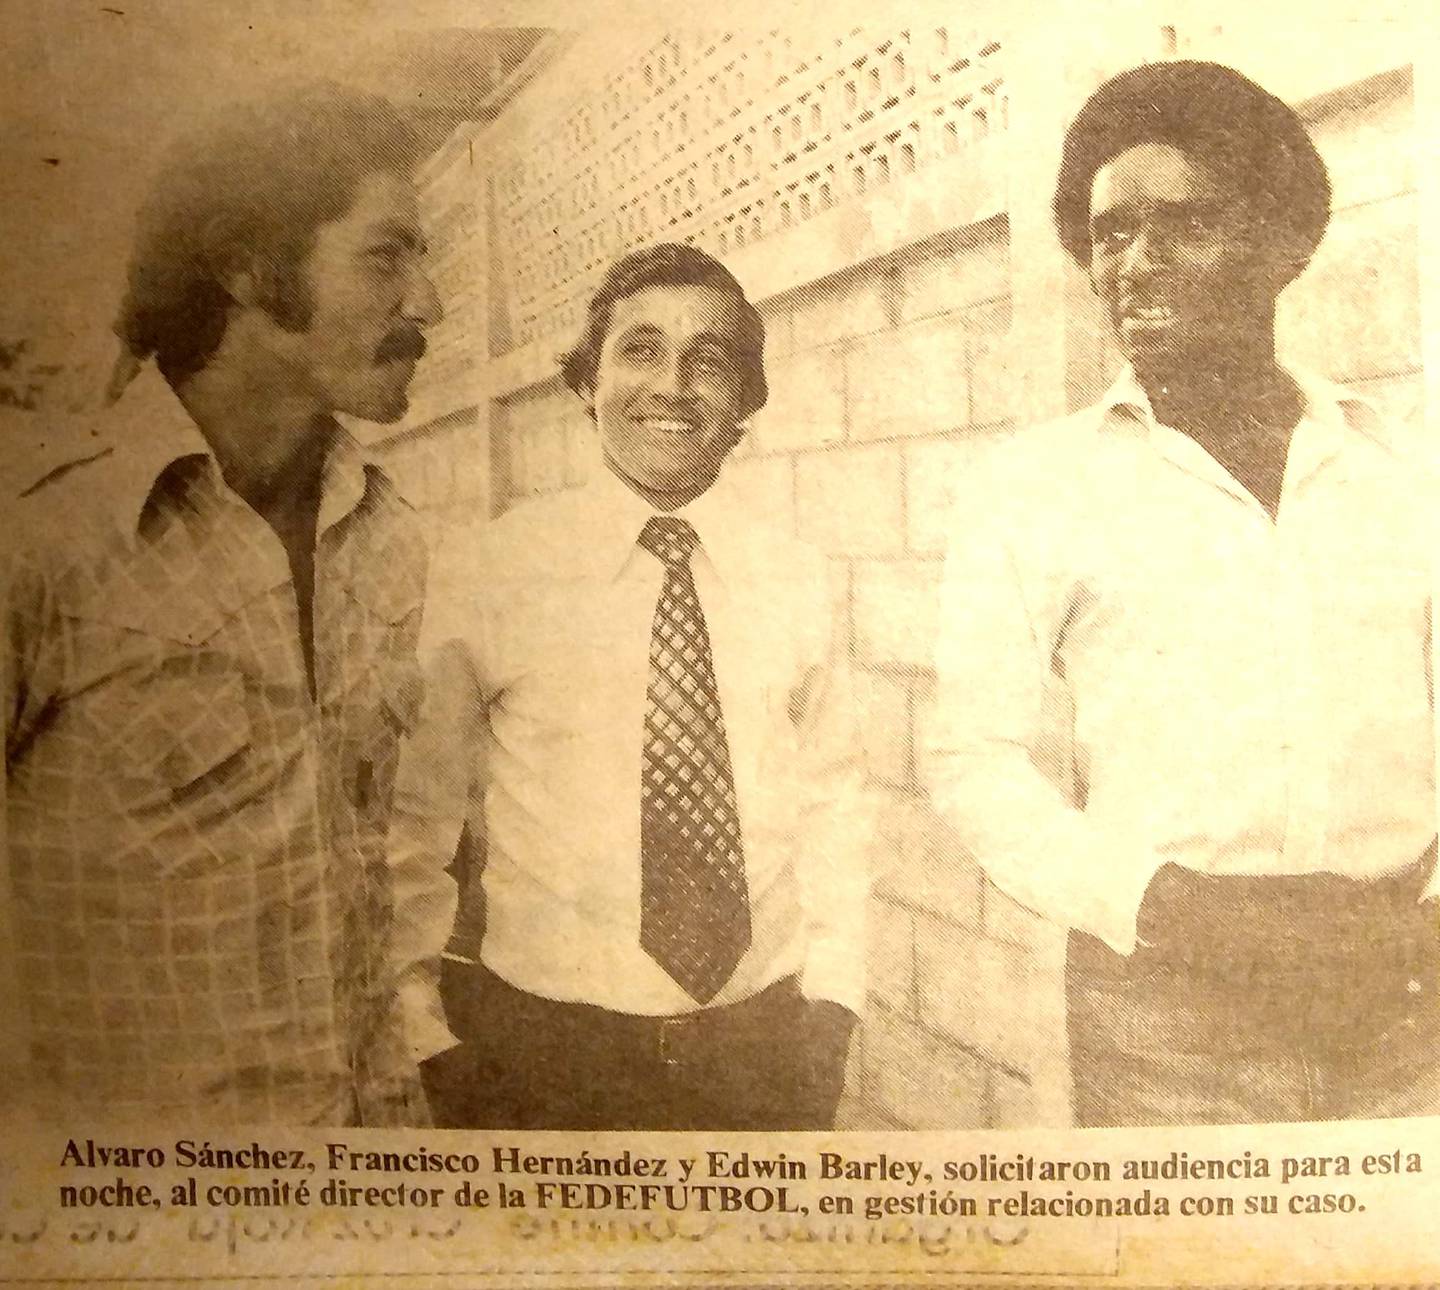 Álvaro Sánchez, Francisco Hernández y Edwin Barley fueron a una audiencia ante el comité director de la Fedefútbol. Fotografía: Centro de Documentación de La Nación